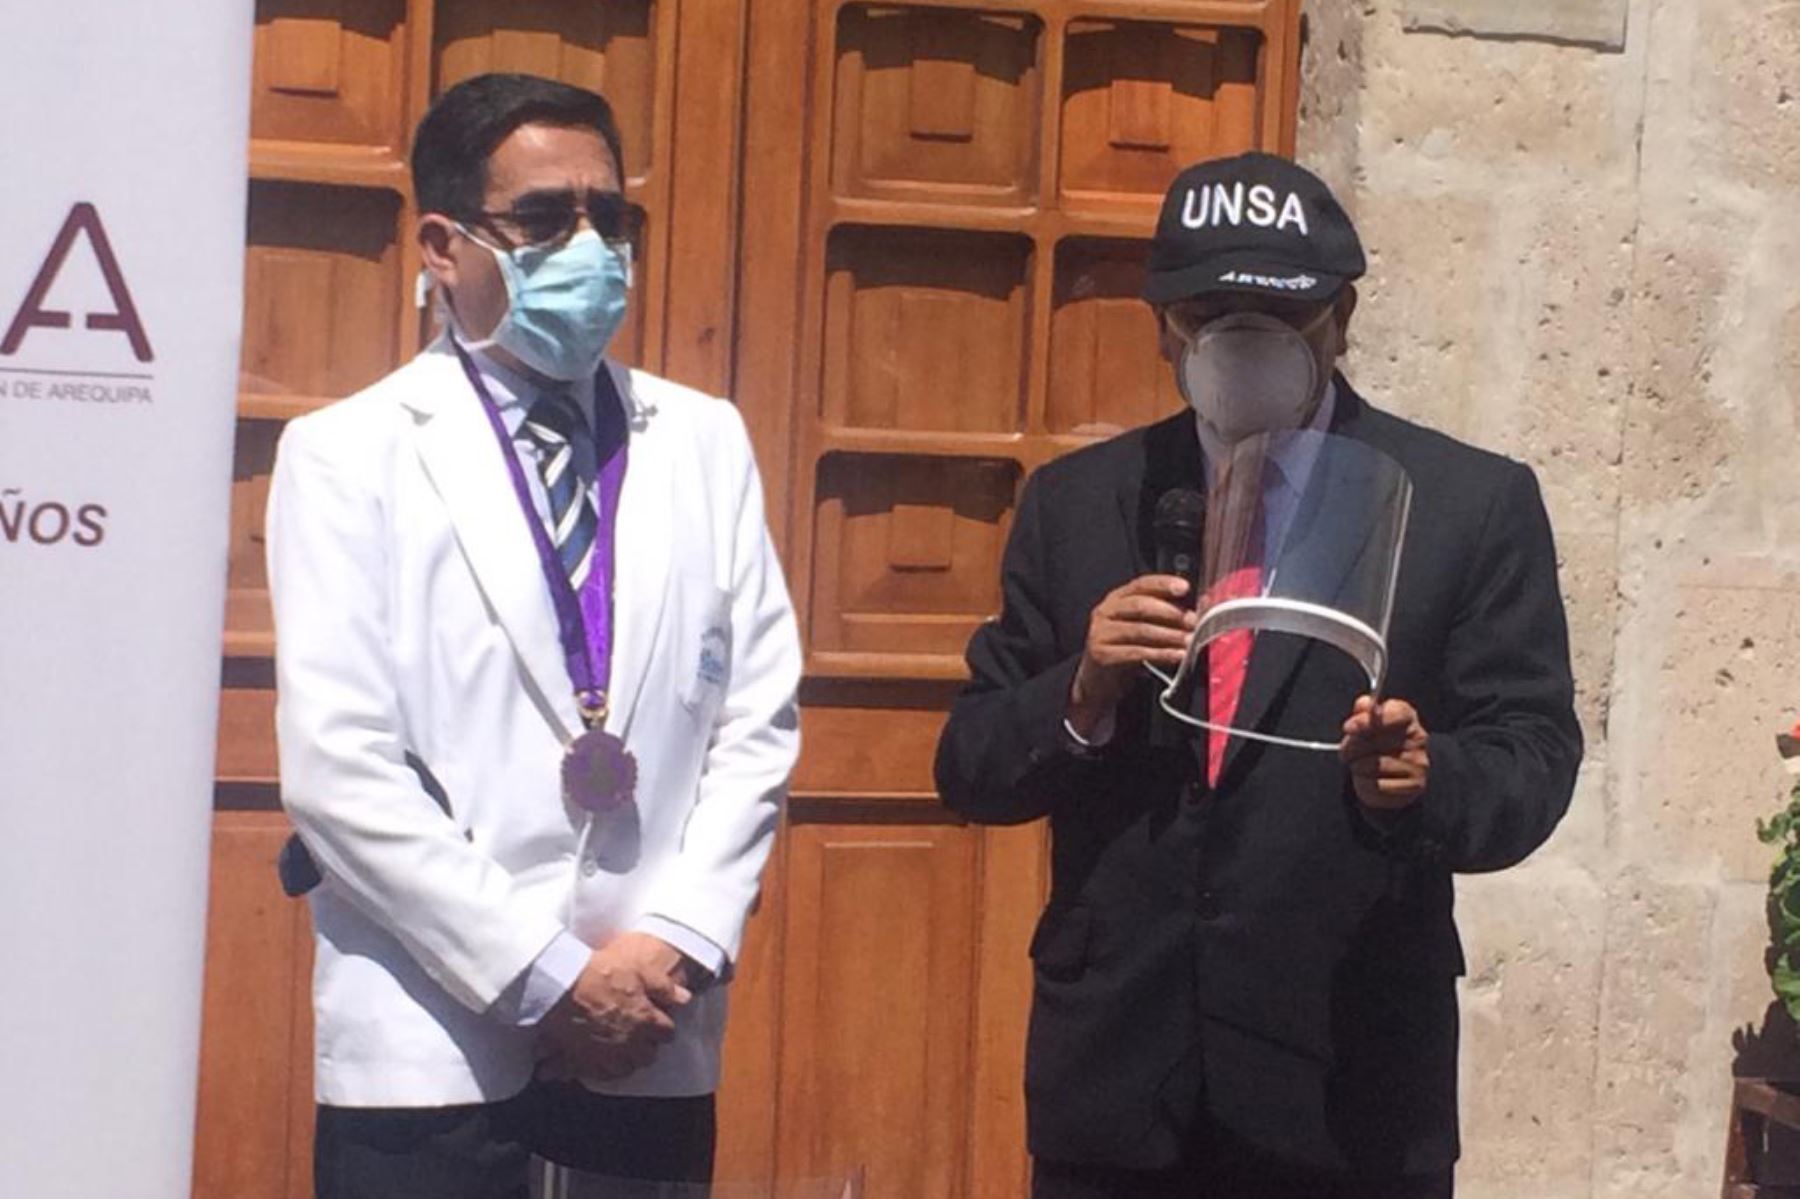 La UNSA donó viseras de protección impresas en 3D para médicos y enfermeras de Arequipa. Foto: Cortesía/Rocío Méndez